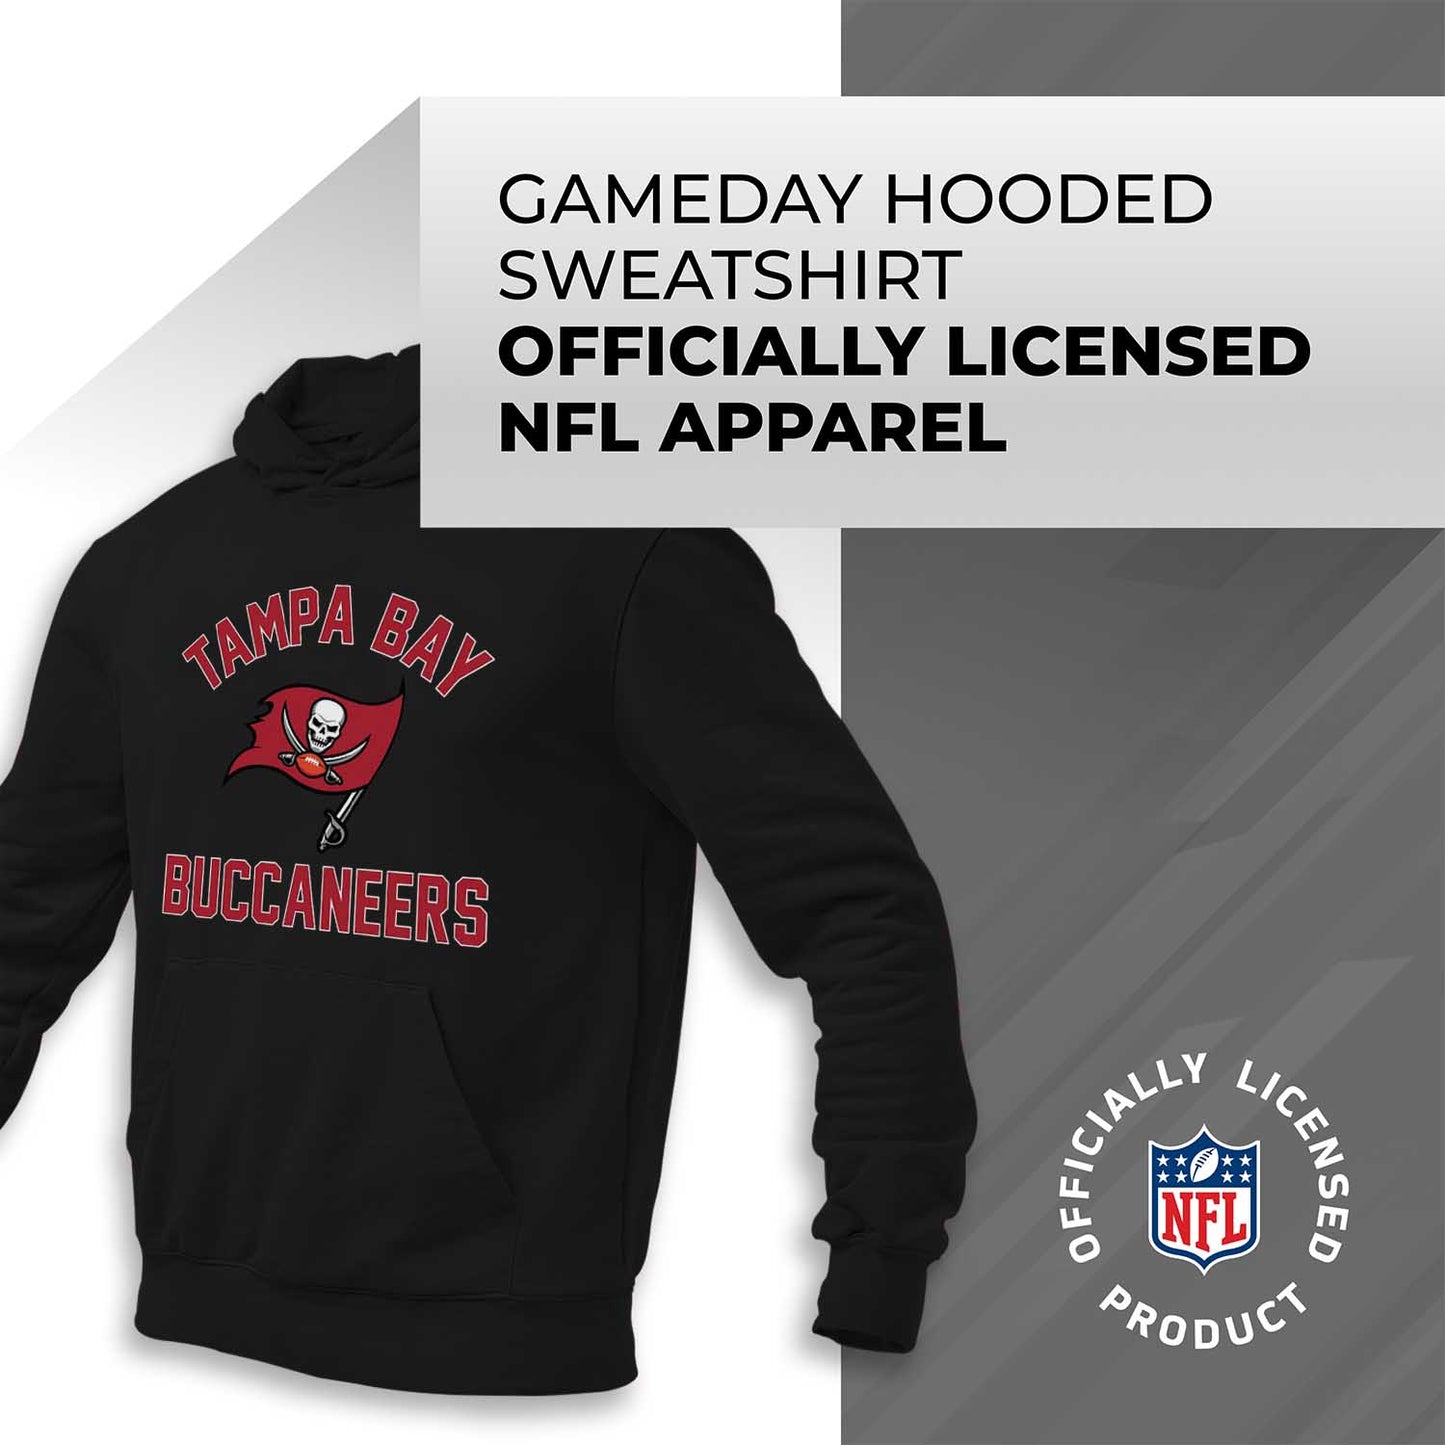 Tampa Bay Buccaneers NFL Adult Gameday Hooded Sweatshirt - Black